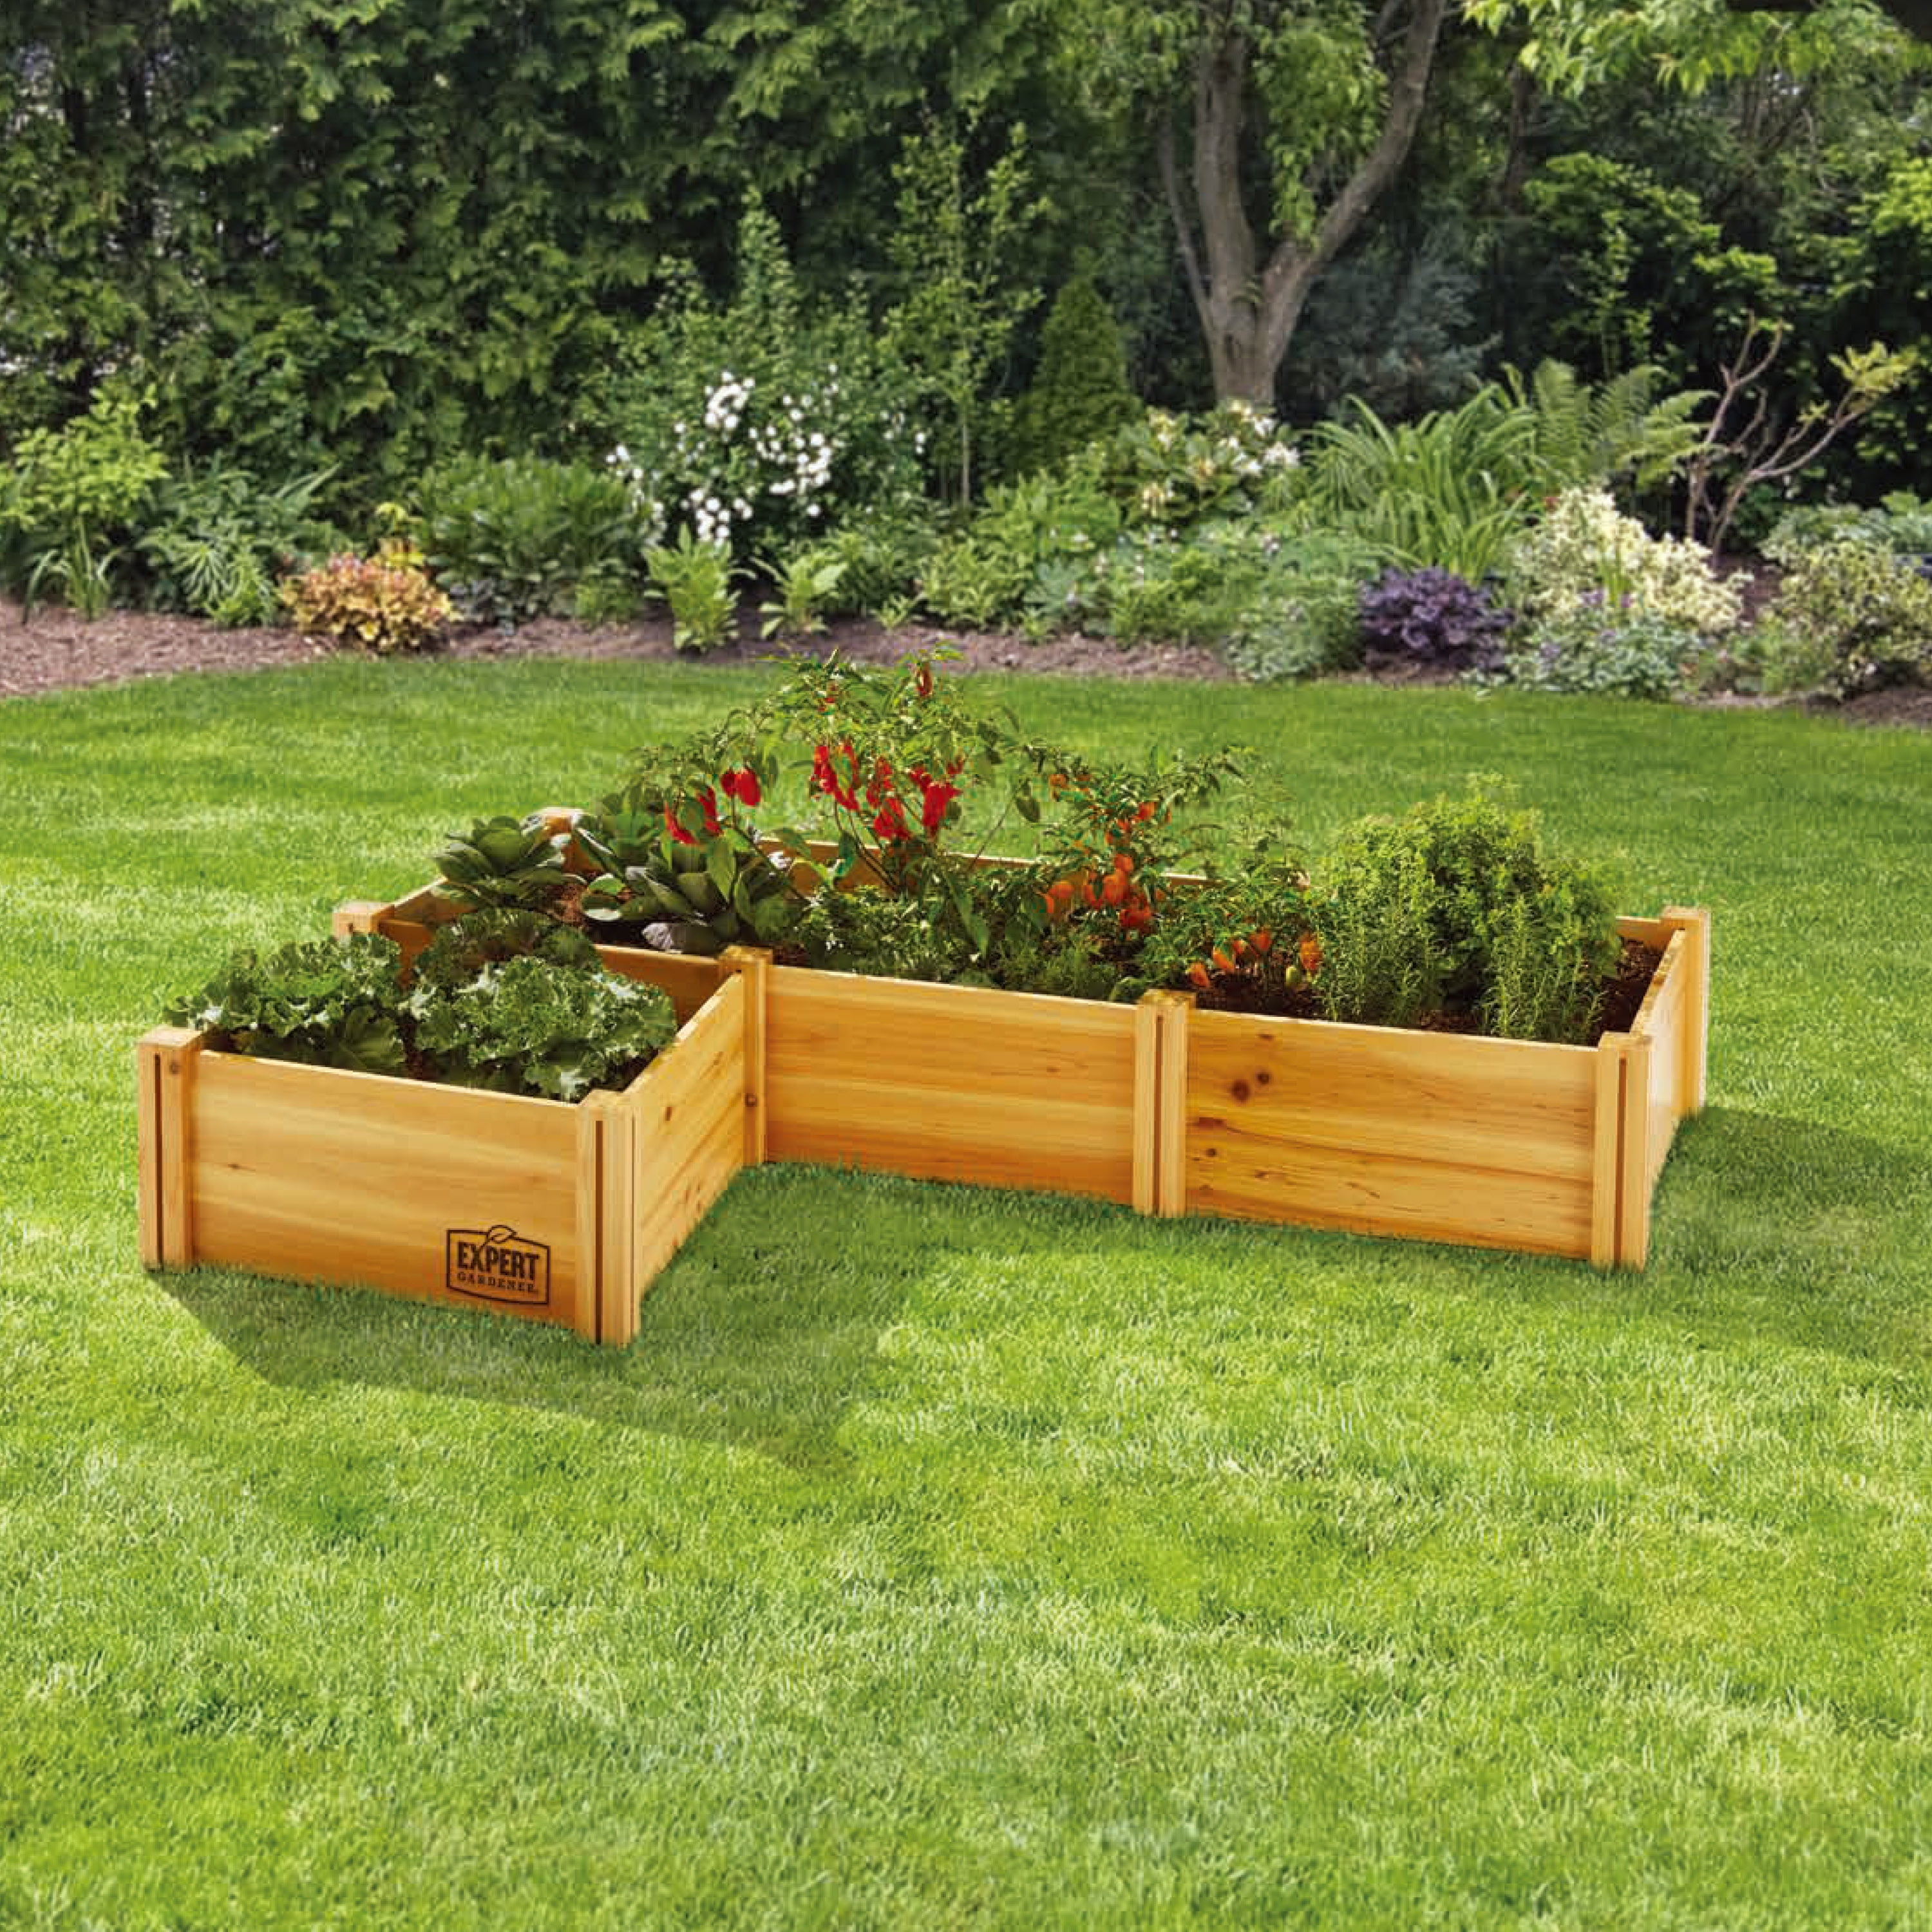 Expert Gardener Wood Garden Bed, 7.4 ft L x 2 ft W x 10.6 in H